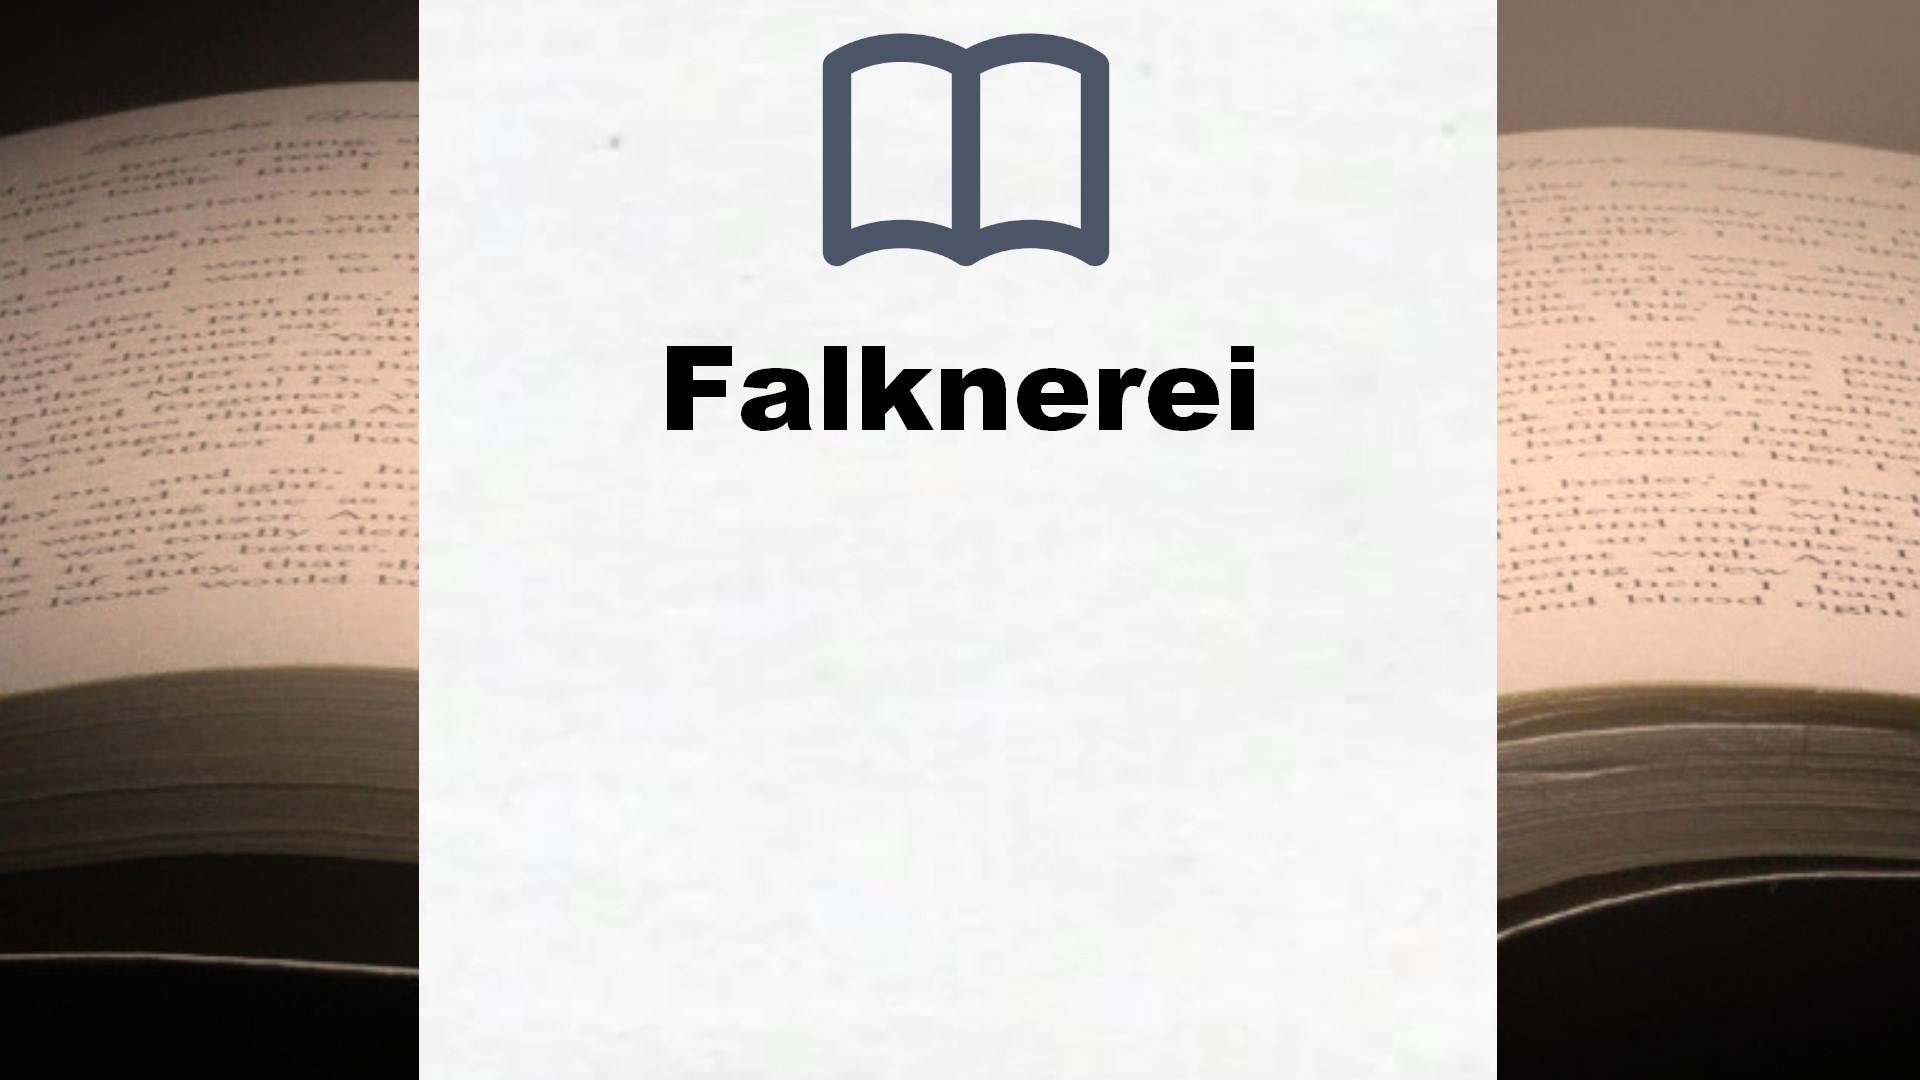 Bücher über Falknerei